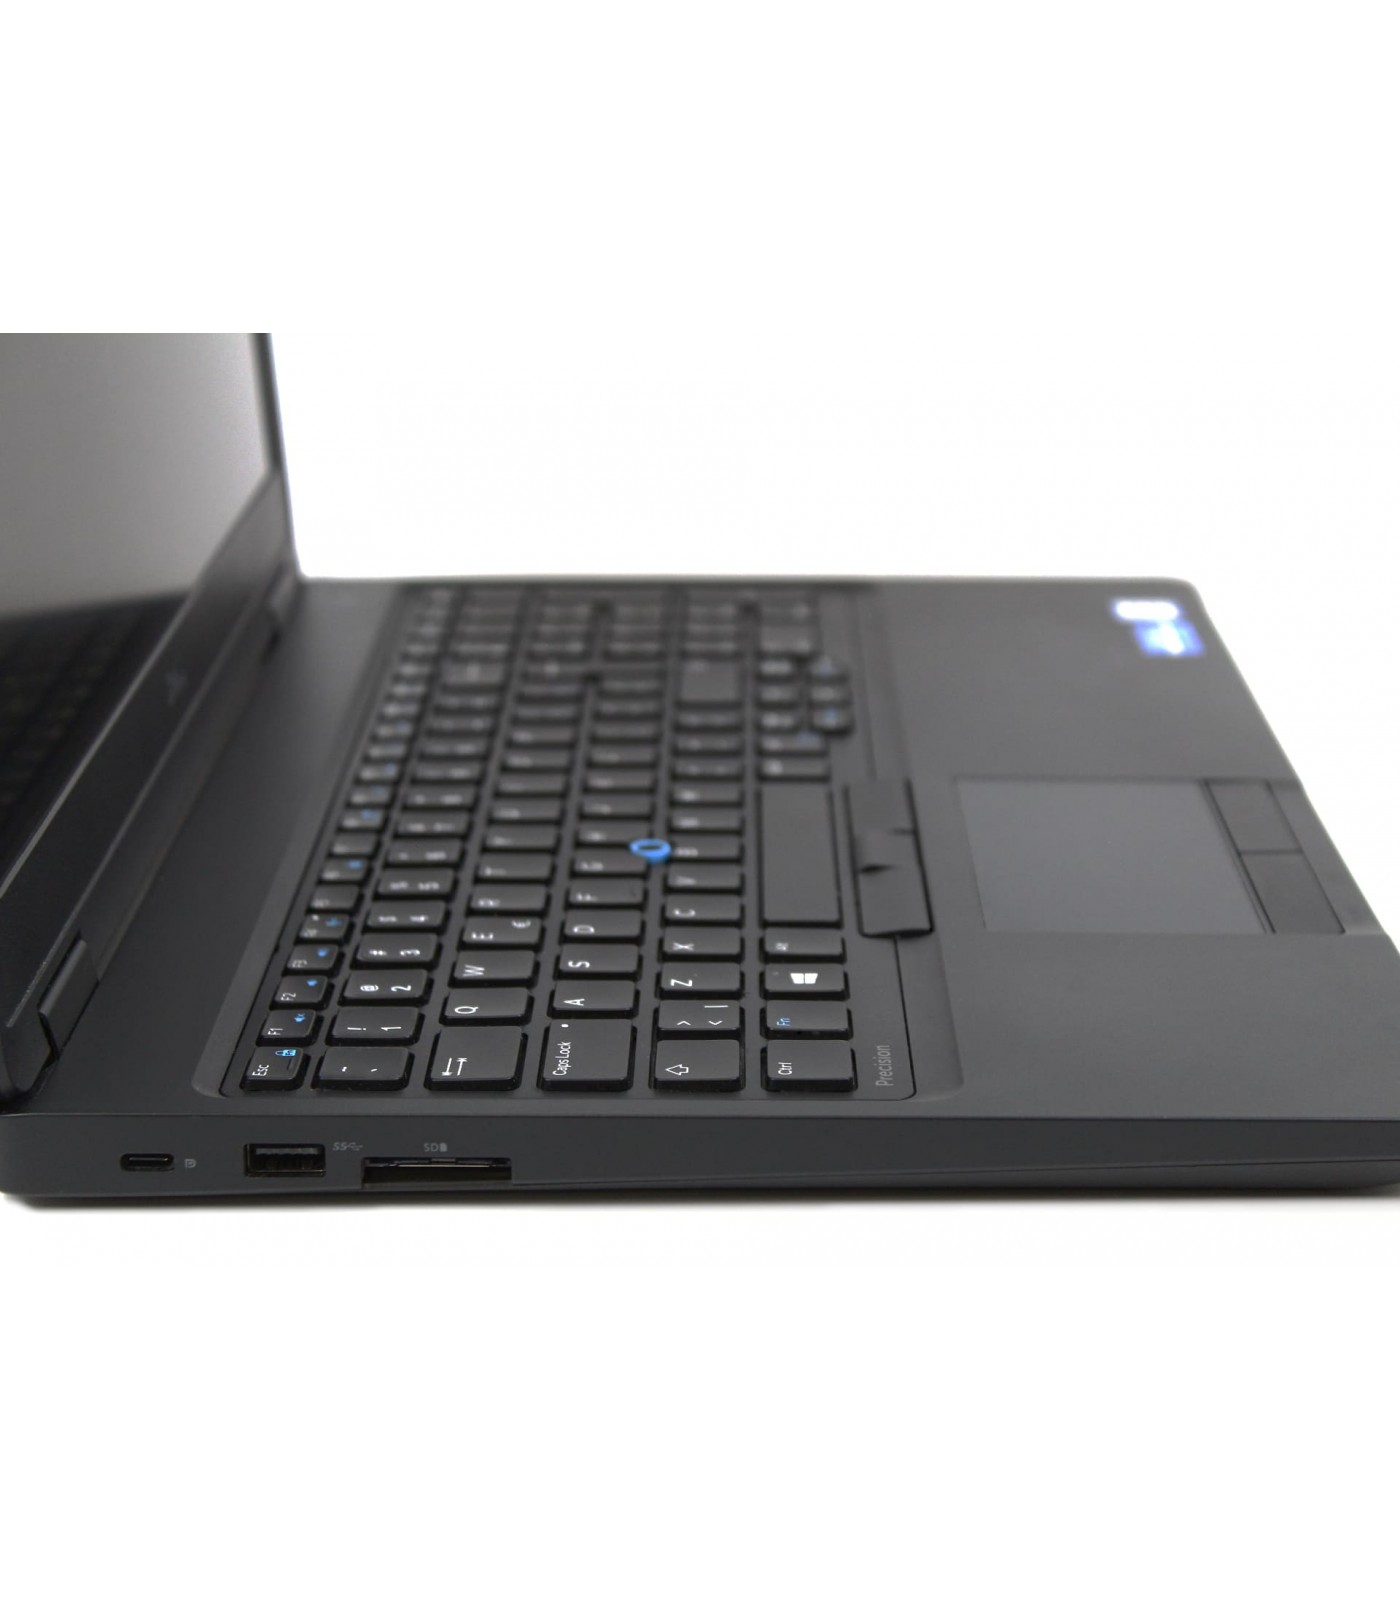 Poleasingowy Laptop Dell Precision 3520 z procesorem i7 i dedykowaną kartą graficzną NVIDIA